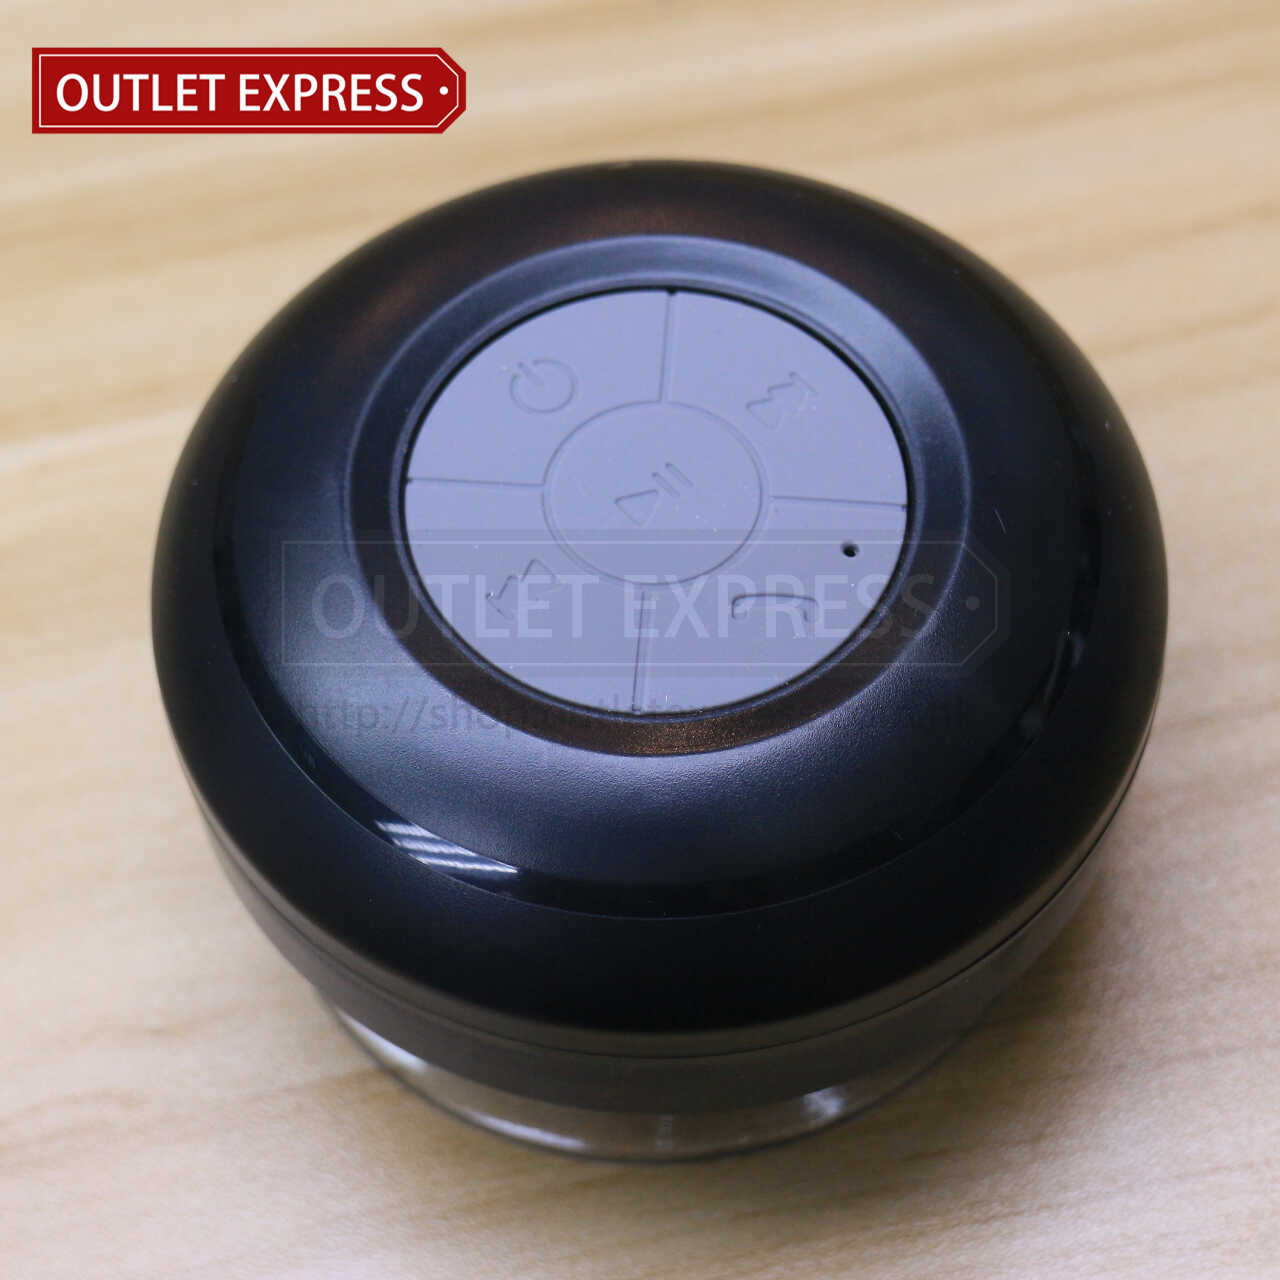 吸盤式防水藍牙喇叭 | 浴室專用 黑色款 - Outlet Express HK 生活百貨城實拍圖